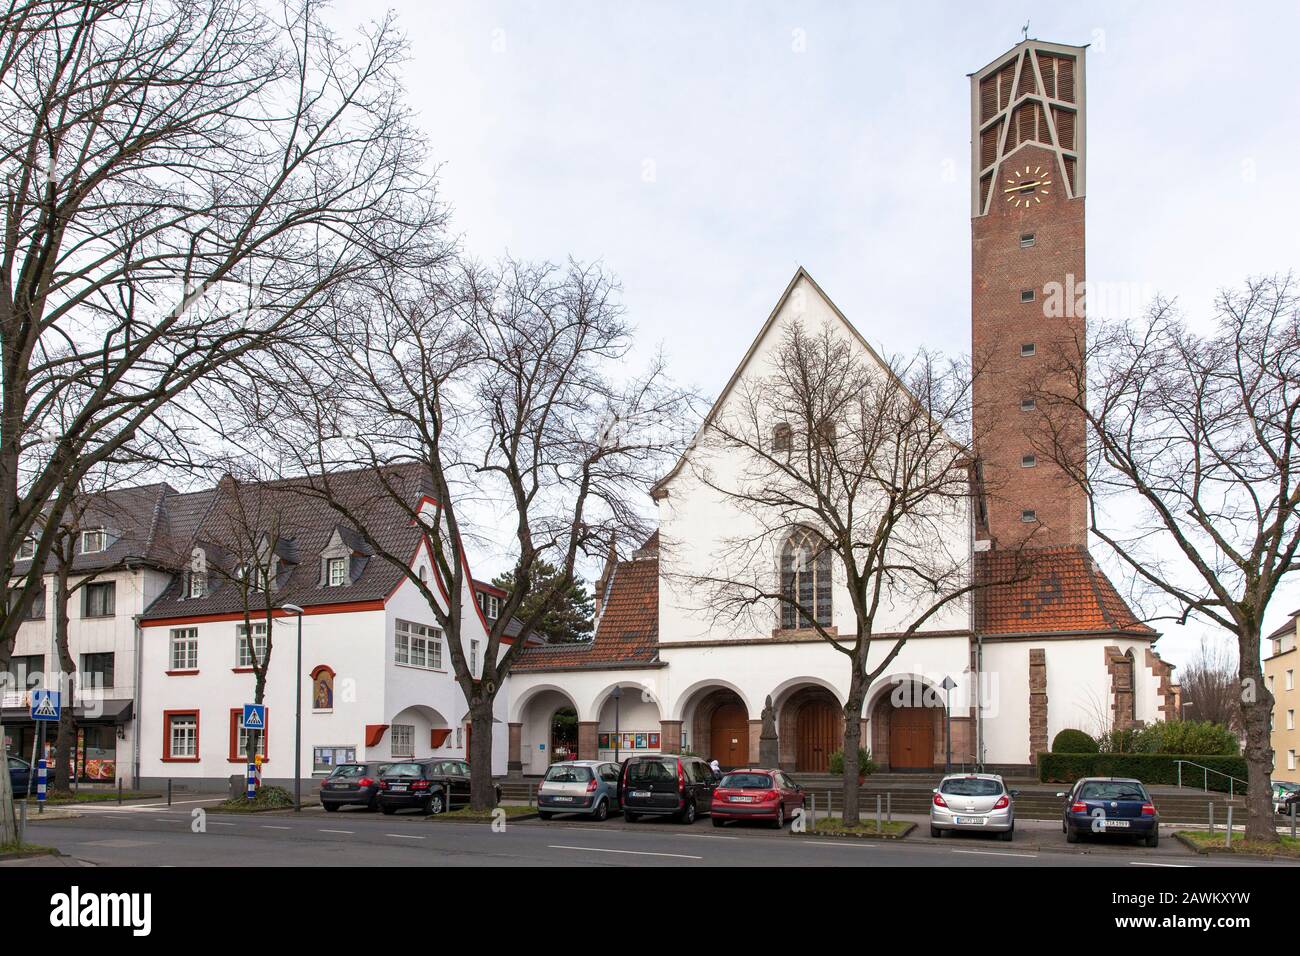 Chiesa parrocchiale San Pio sulla strada Gottesweg nel quartiere Zollstock, Colonia, Germania. Pfarrkirche San Pio Kirche Am Gottesweg Im Stadtteil Zol Foto Stock